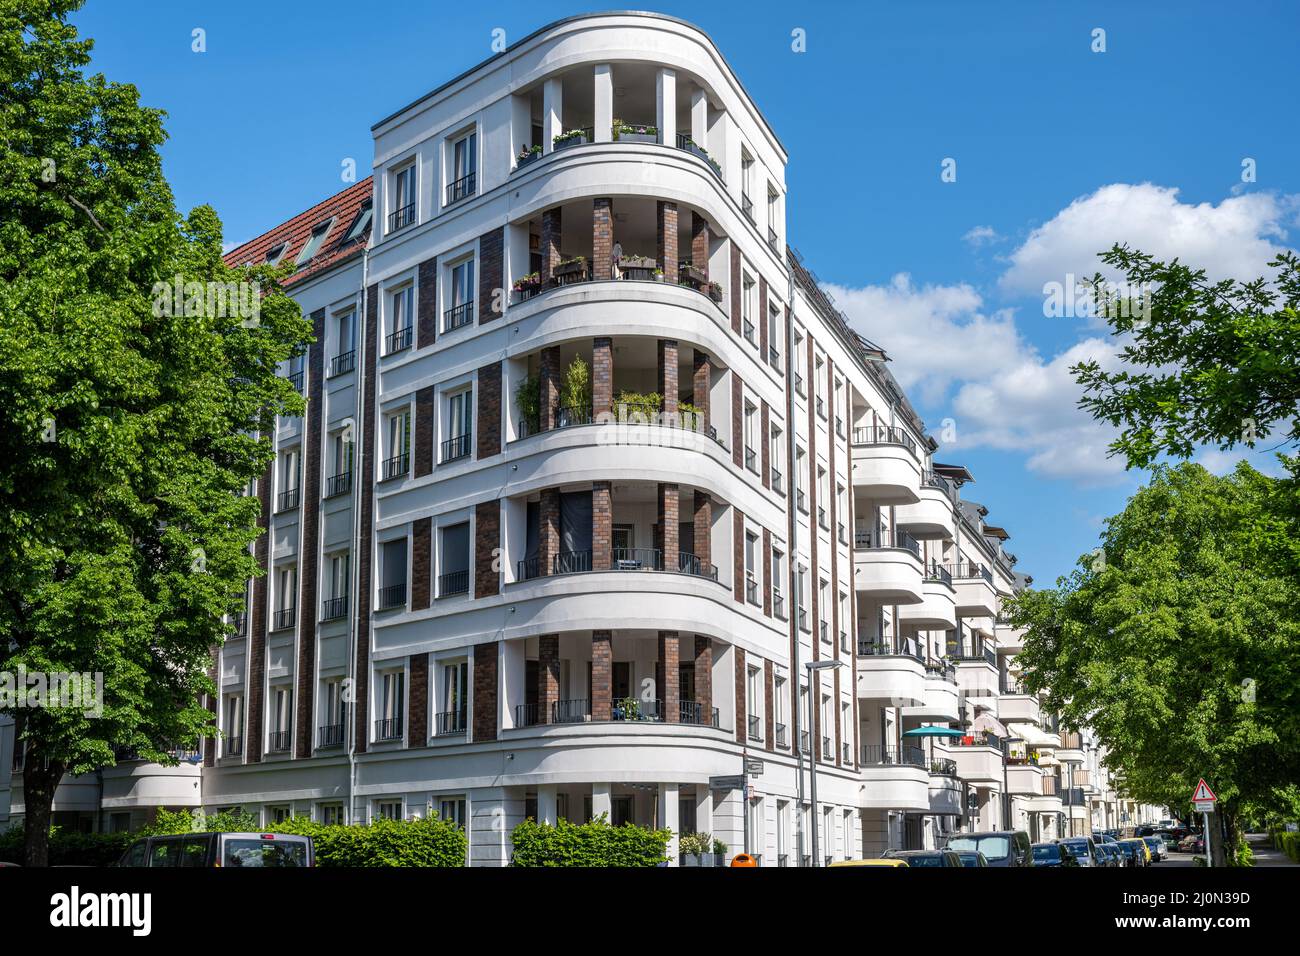 Apartamentos modernos en un barrio residencial de Berlín, Alemania Foto de stock